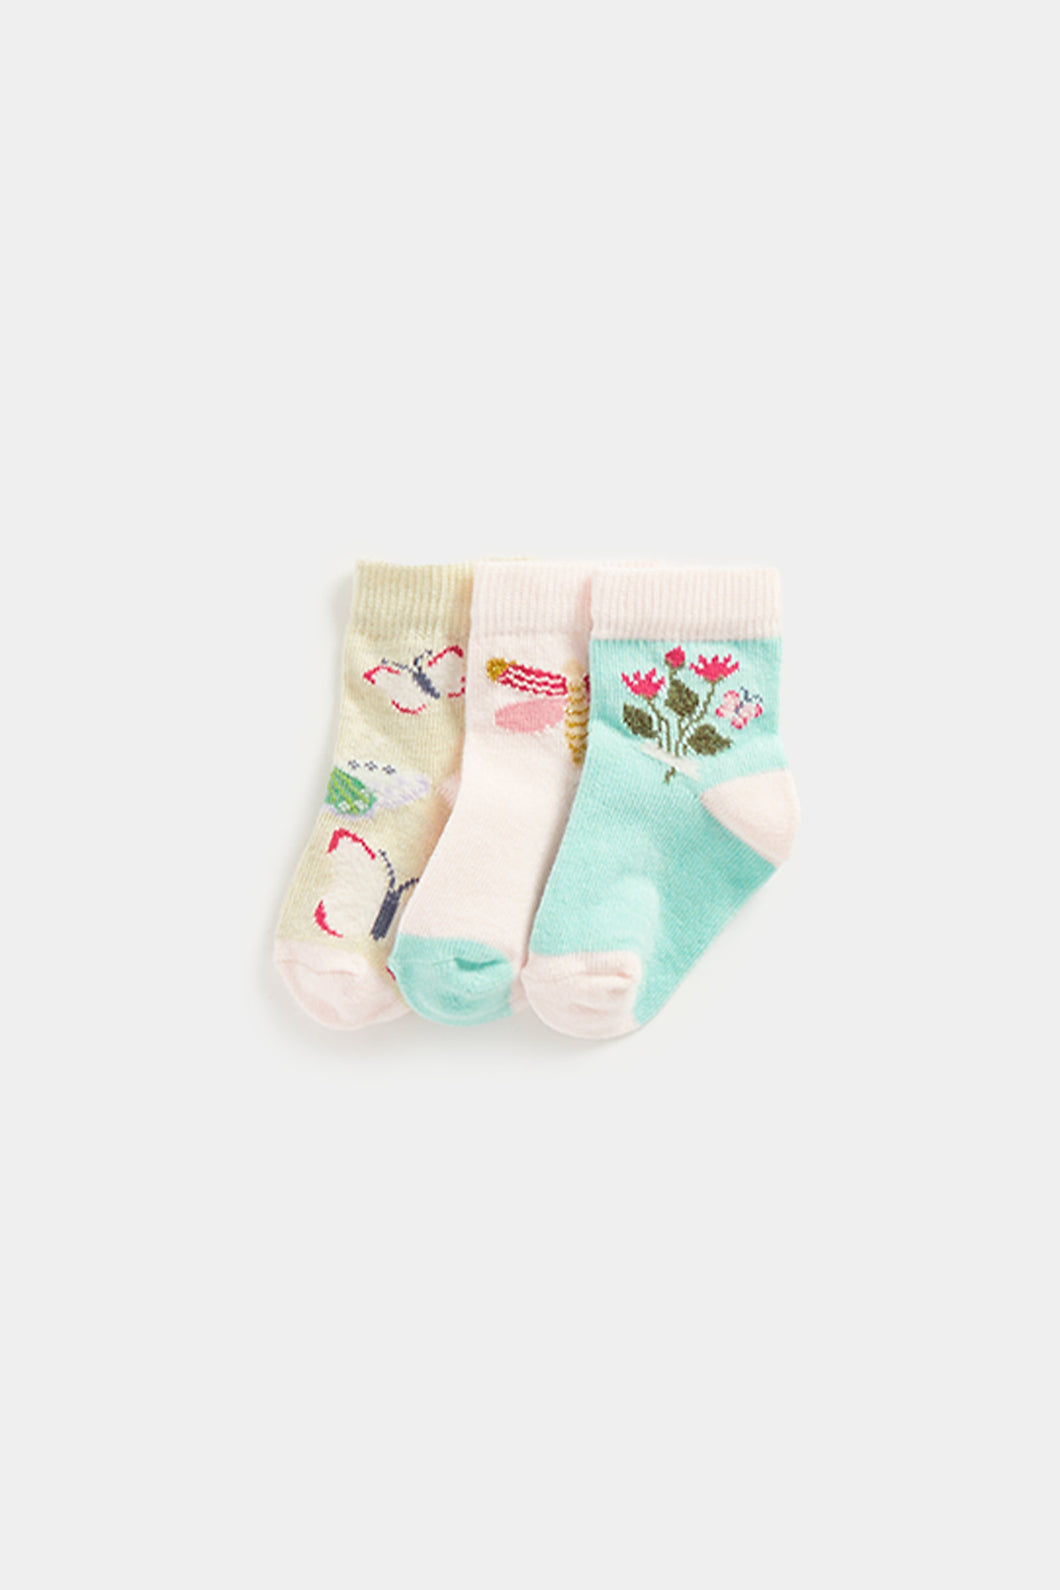 Mothercare Garden Baby Socks - 3 Pack